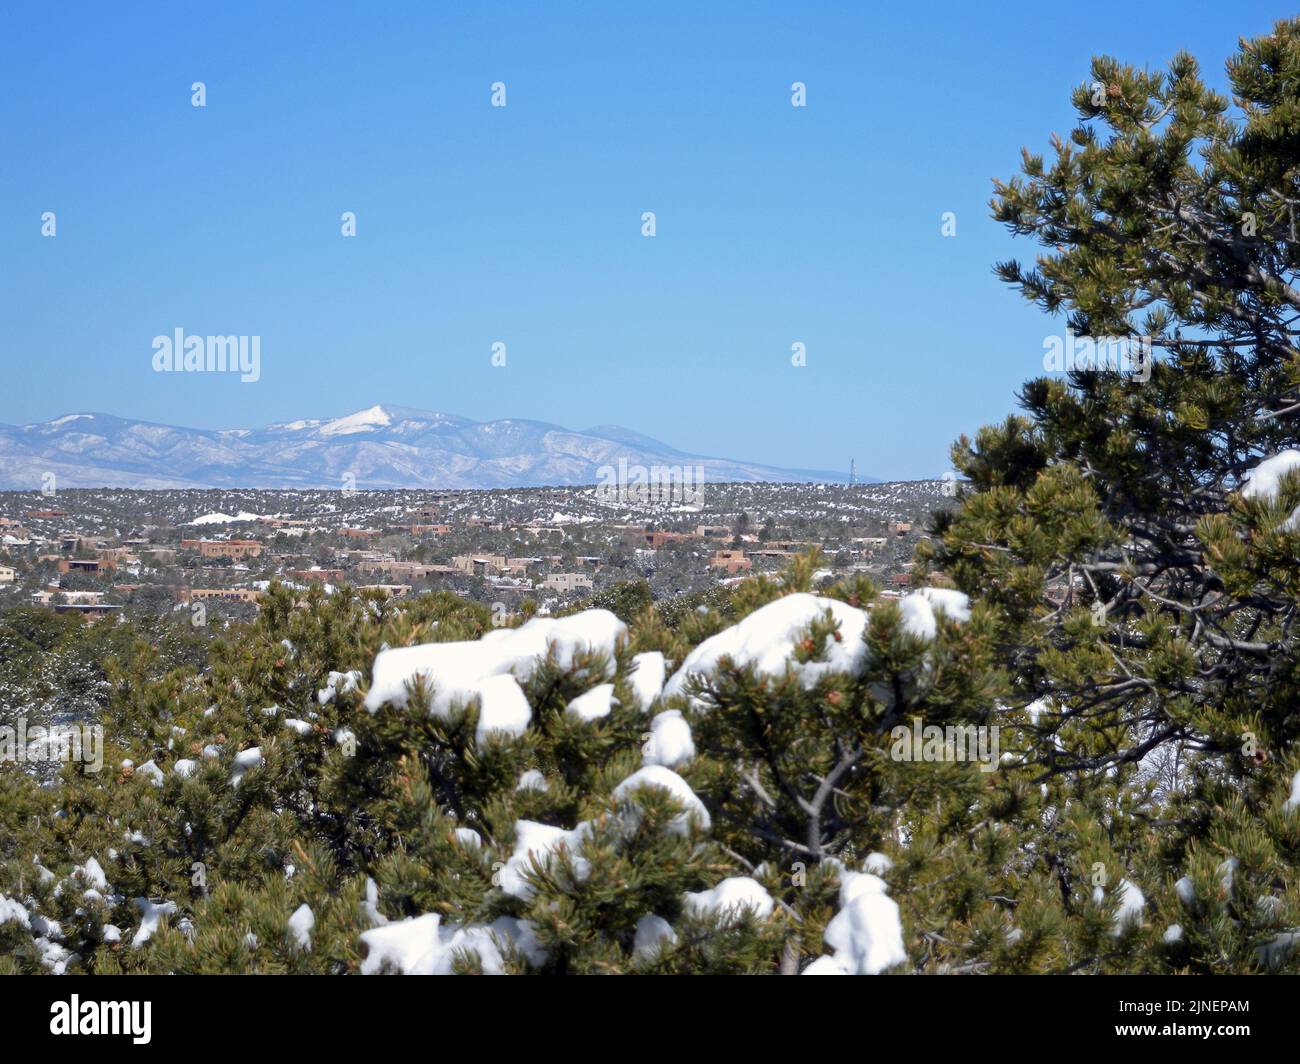 Santa Fe settentrionale e Pajarito montagna (3182 m) visto dalla strada del bacino di sci, Santa Fe, New Mexico, USA, 2009-03-28 10:21 Foto Stock